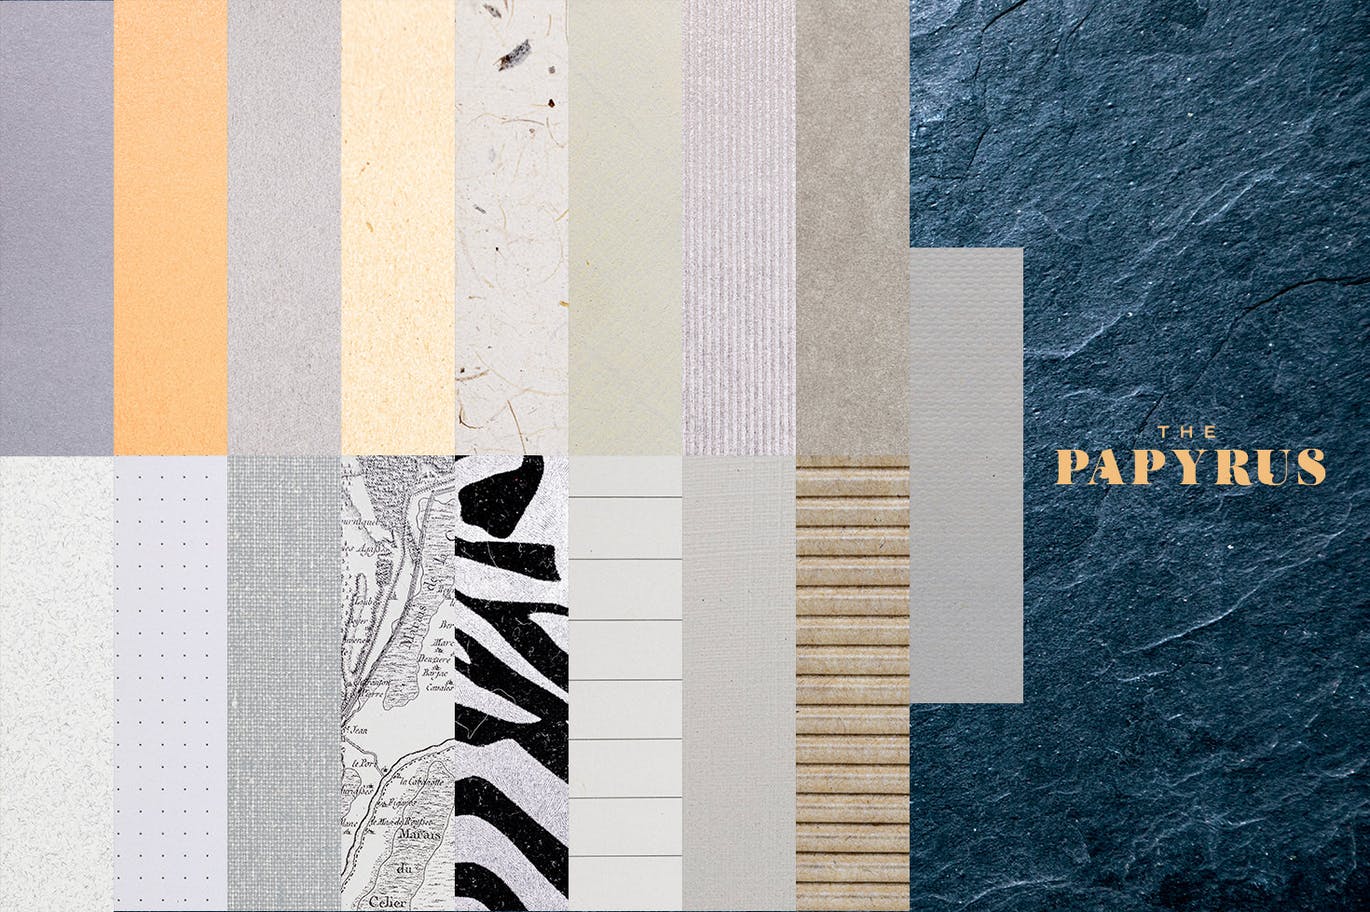 65个莎草纸纸张纹理合集 The Papyrus – 65 Paper Textures 图片素材 第7张